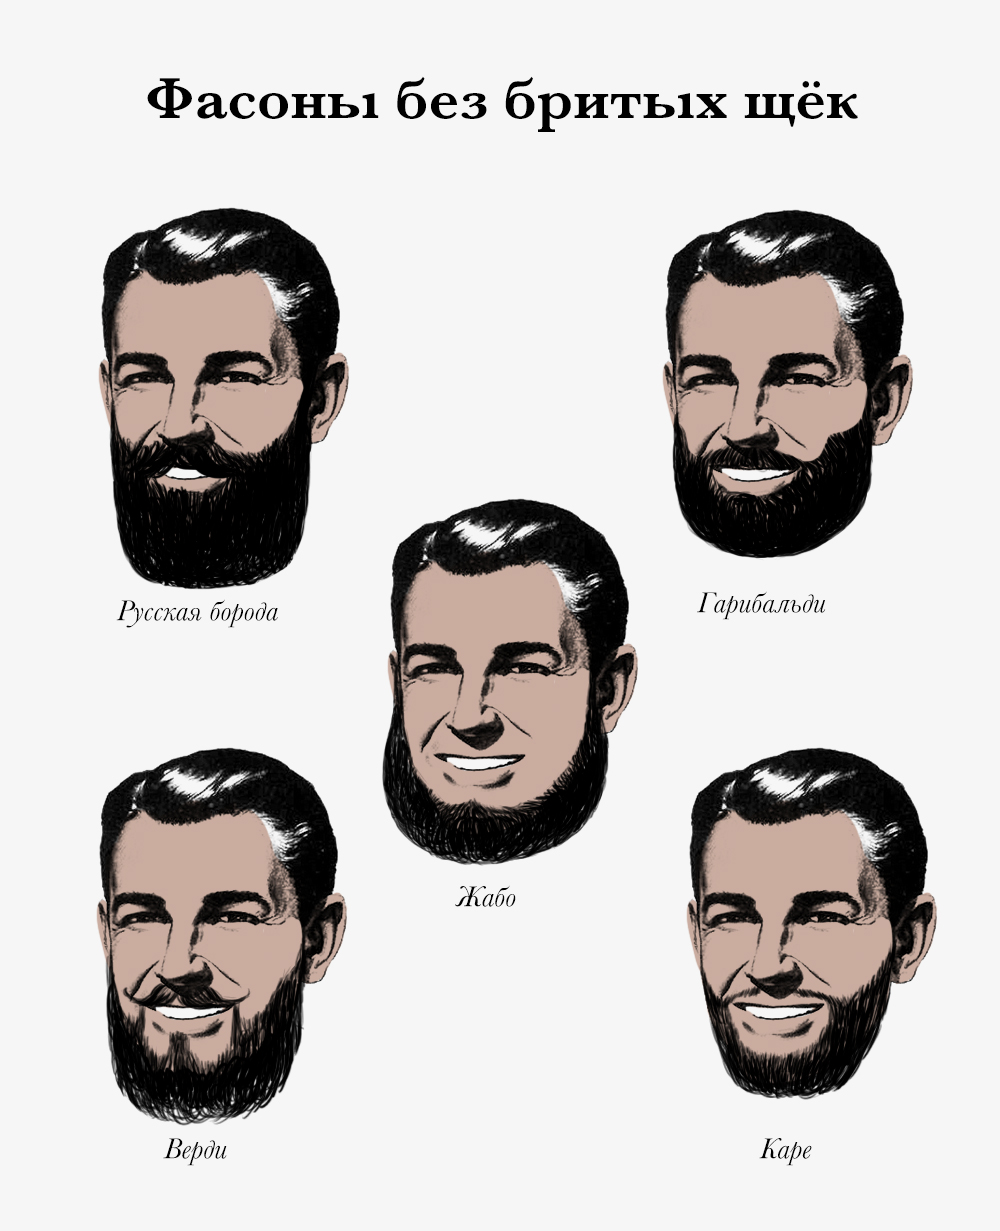 Борода без усов. 11 крутых стилей с фото